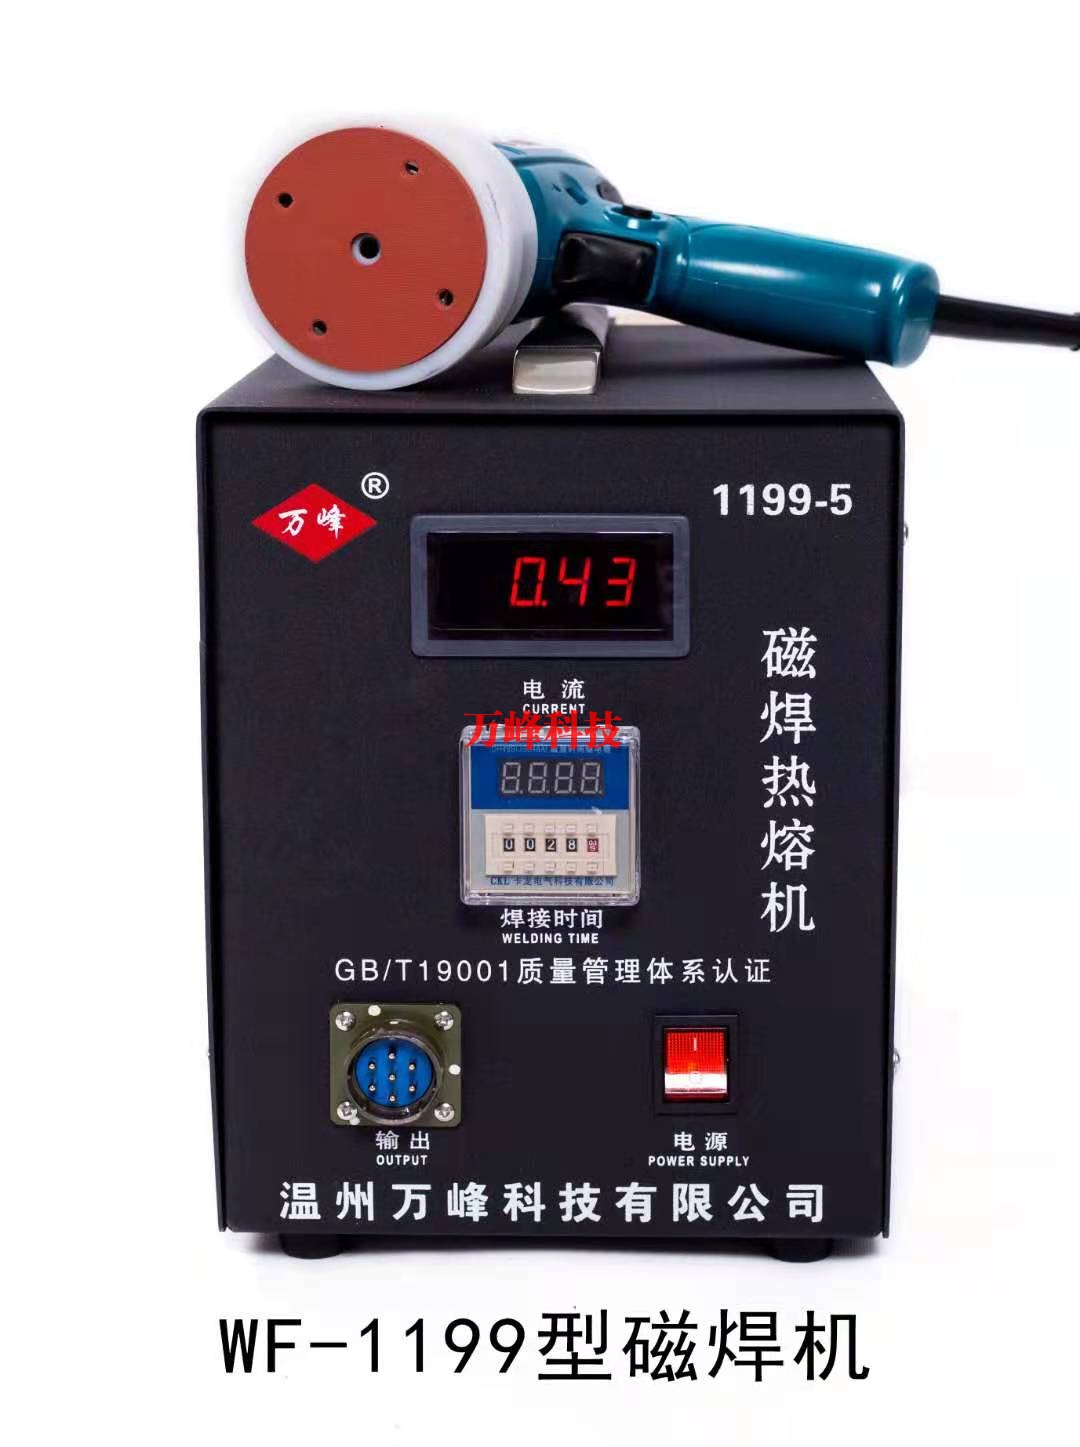 上海WF-1199型磁焊热熔机